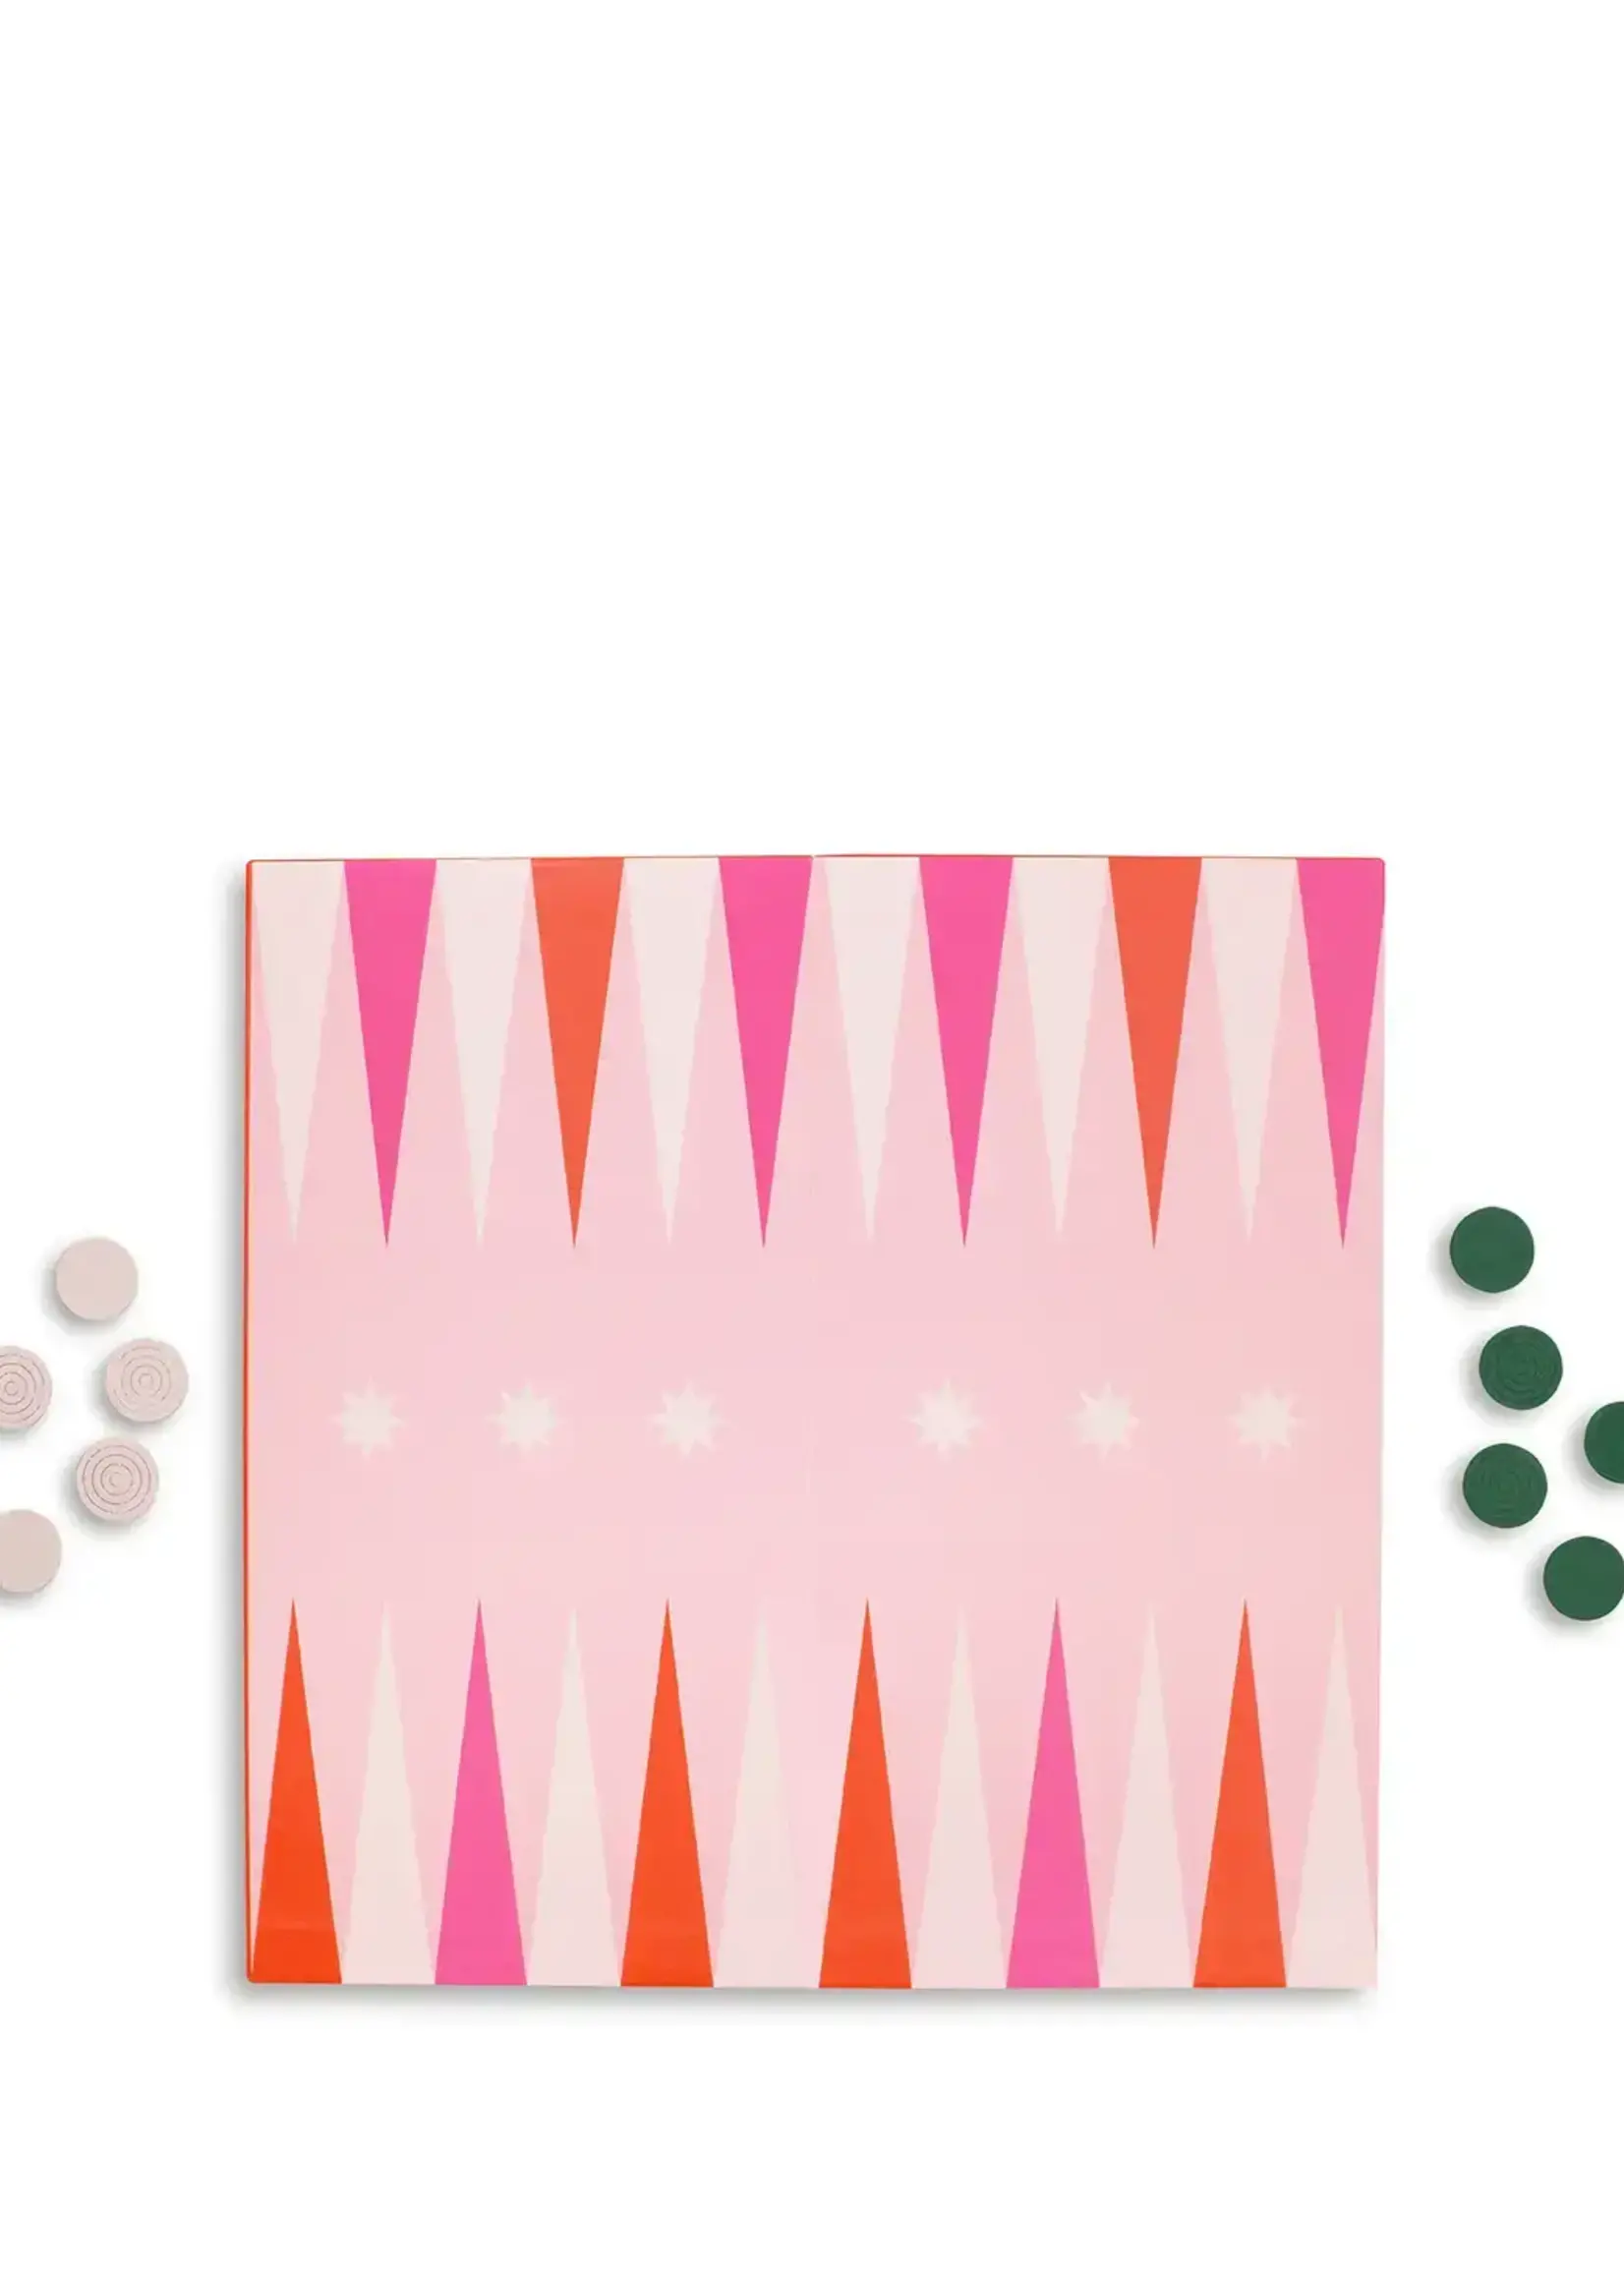 Creative Twist Events Game Night! 2-in-1 Checkers & Backgammon Board